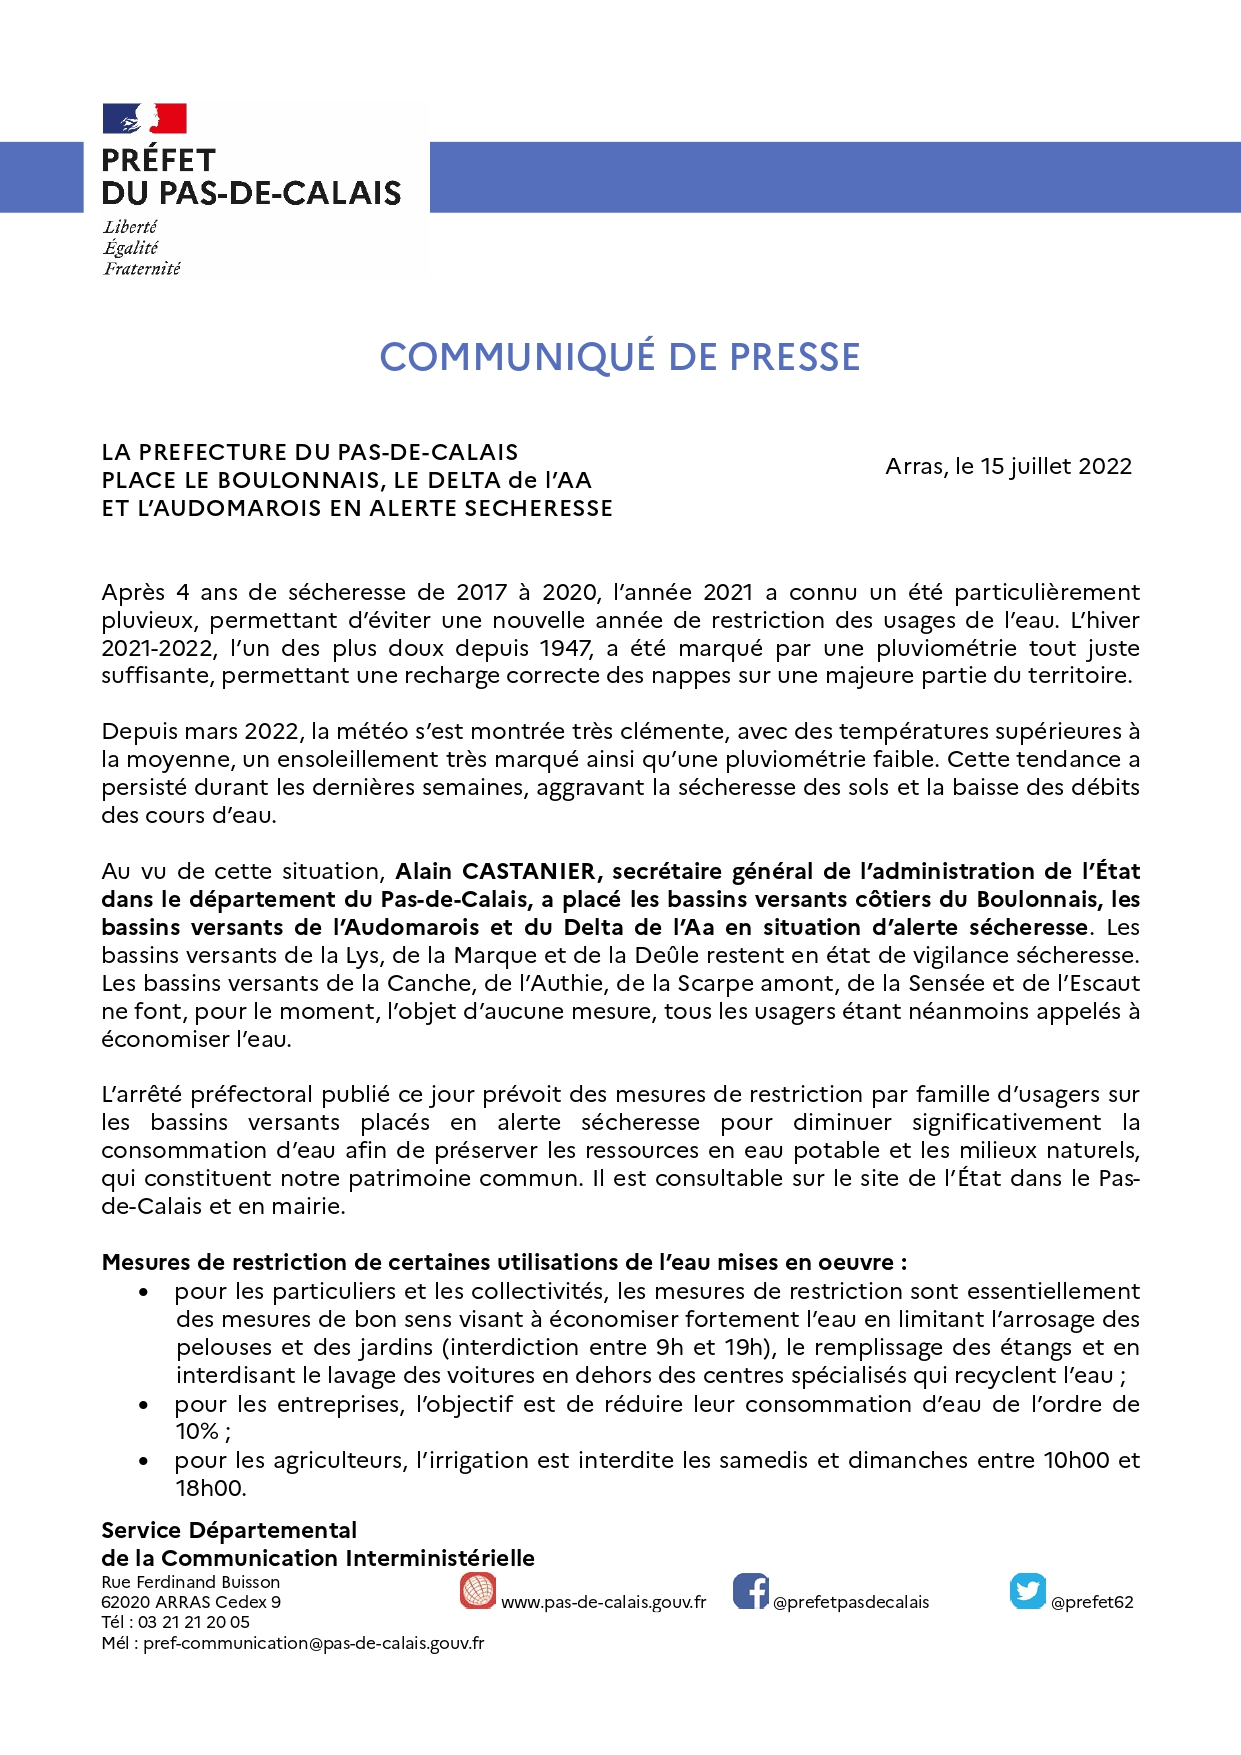 2022-04-15- Alerte sécheresse - Boulonnais-Delta de l_AA et Audomarois_page-0001.jpg